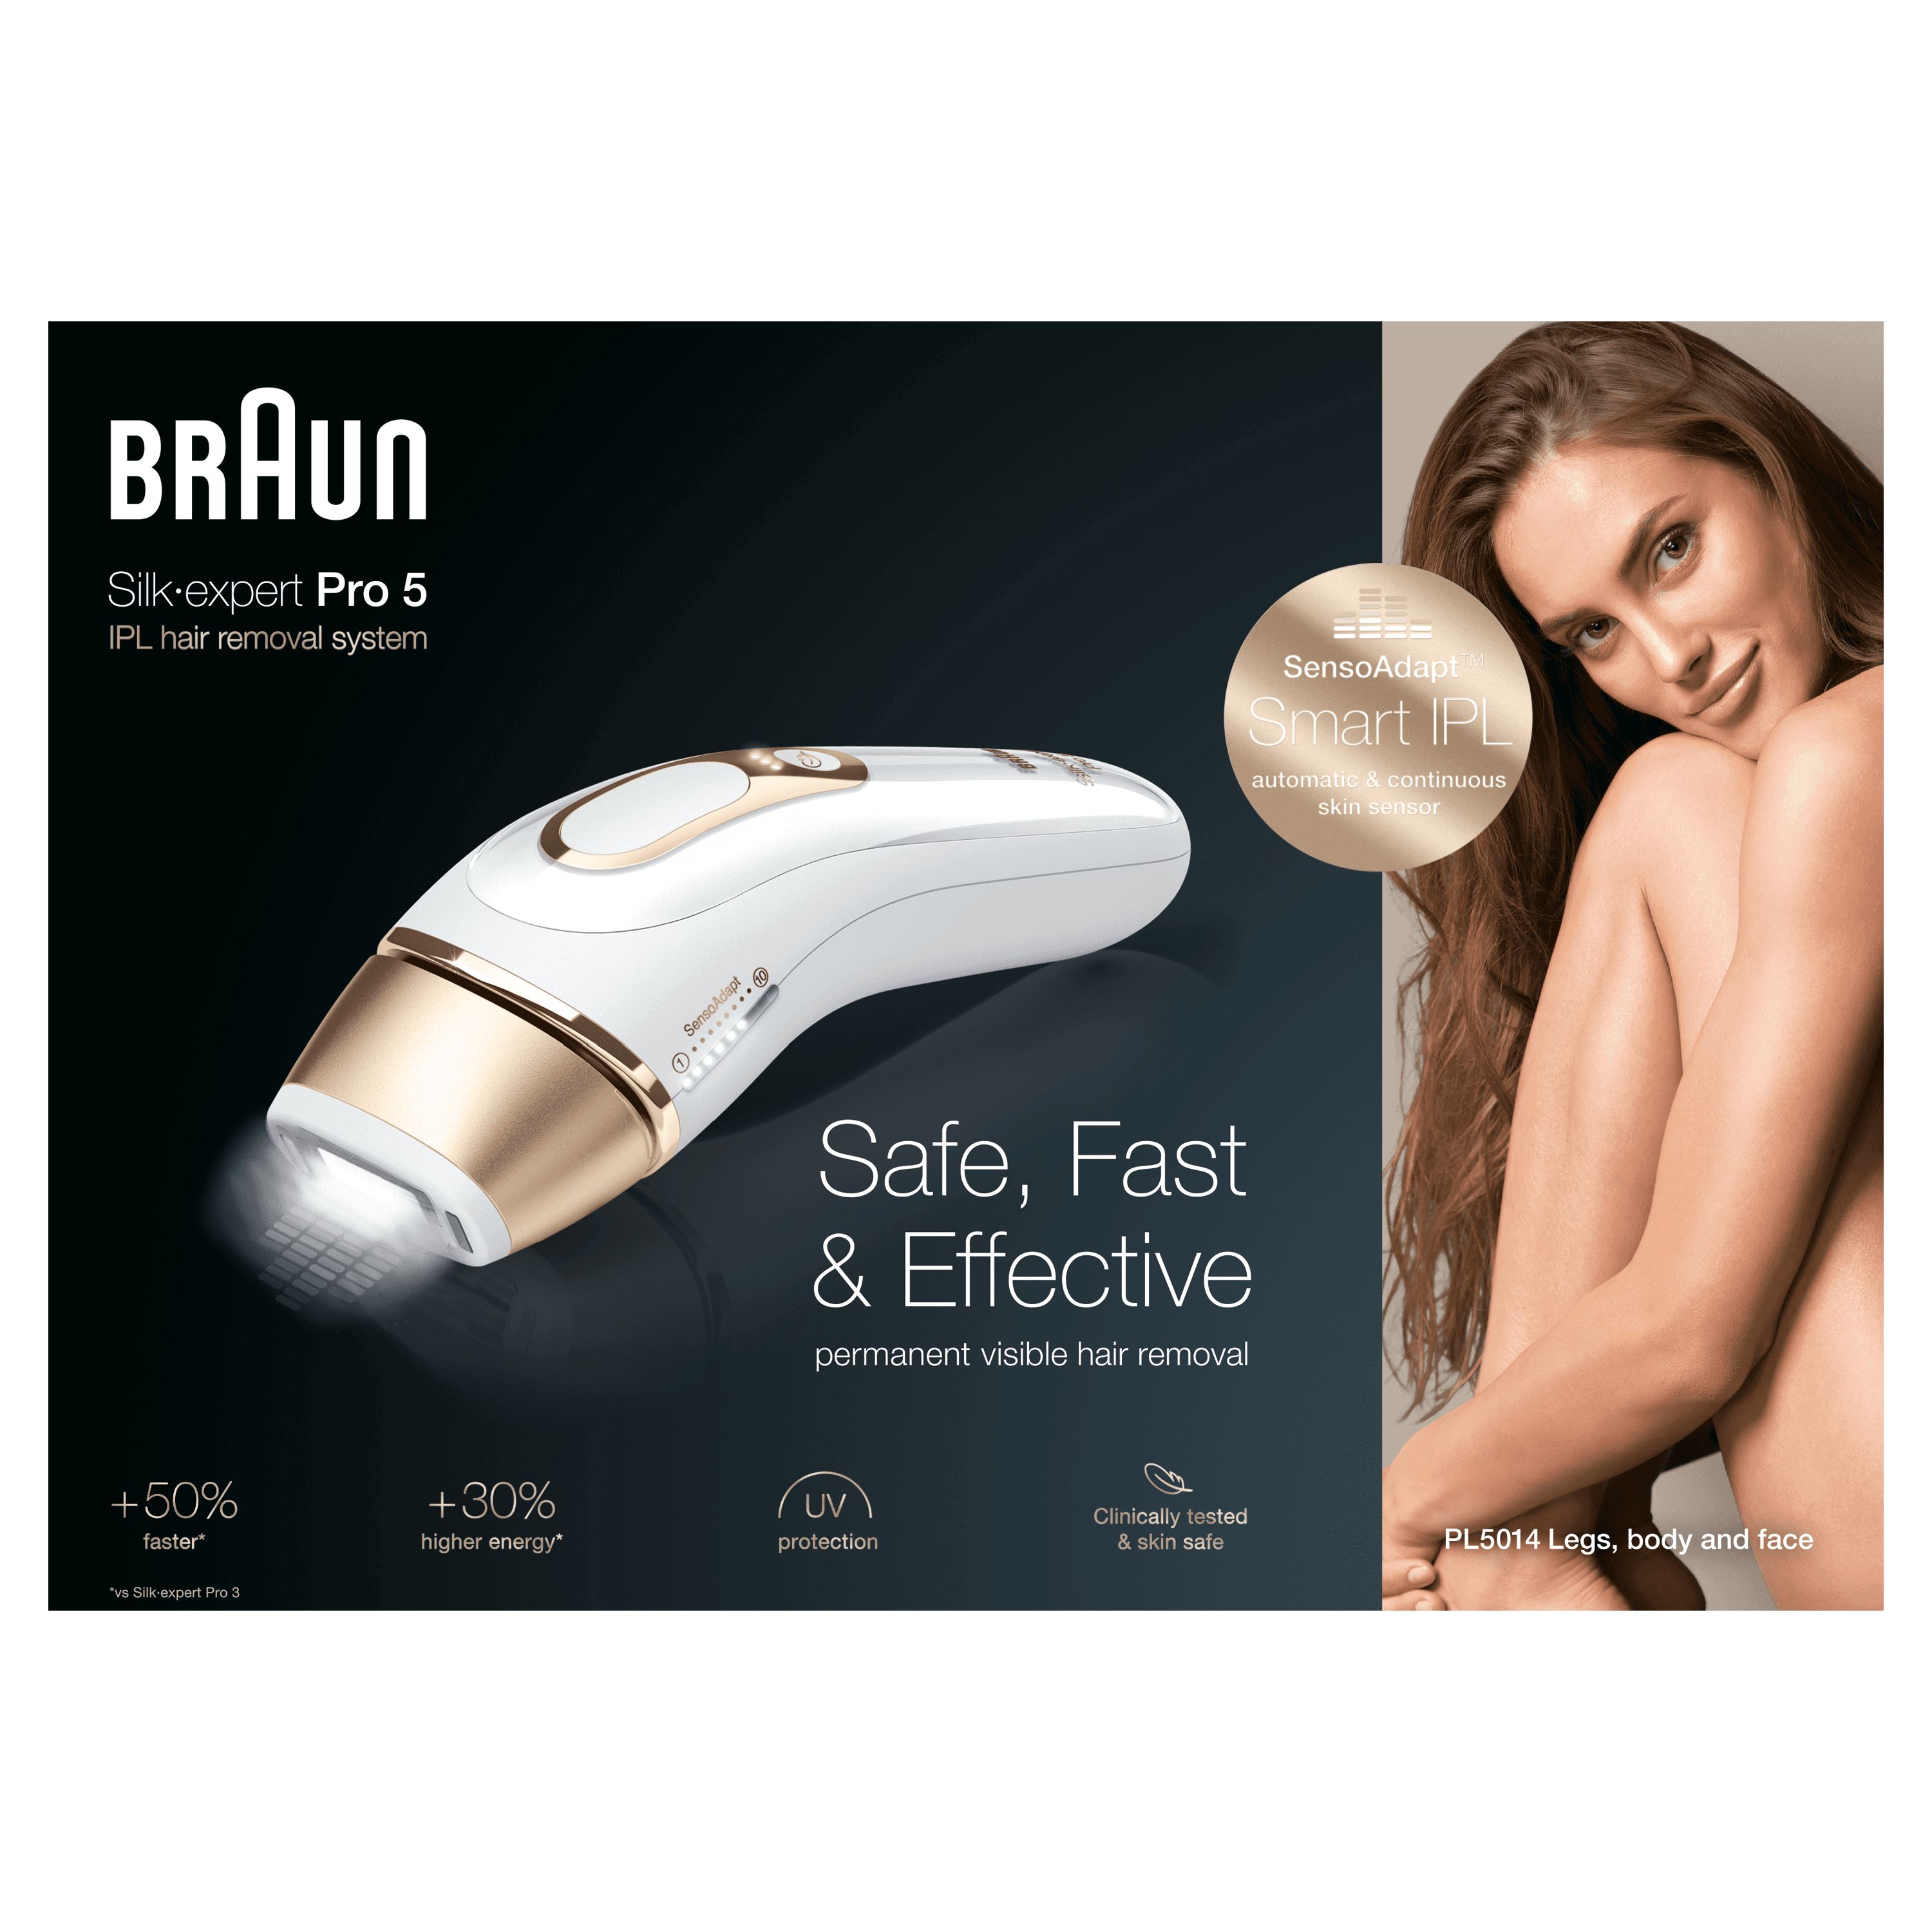 Epilateur lumière pulsée intense Braun Silk-expert Pro 5 PL5014